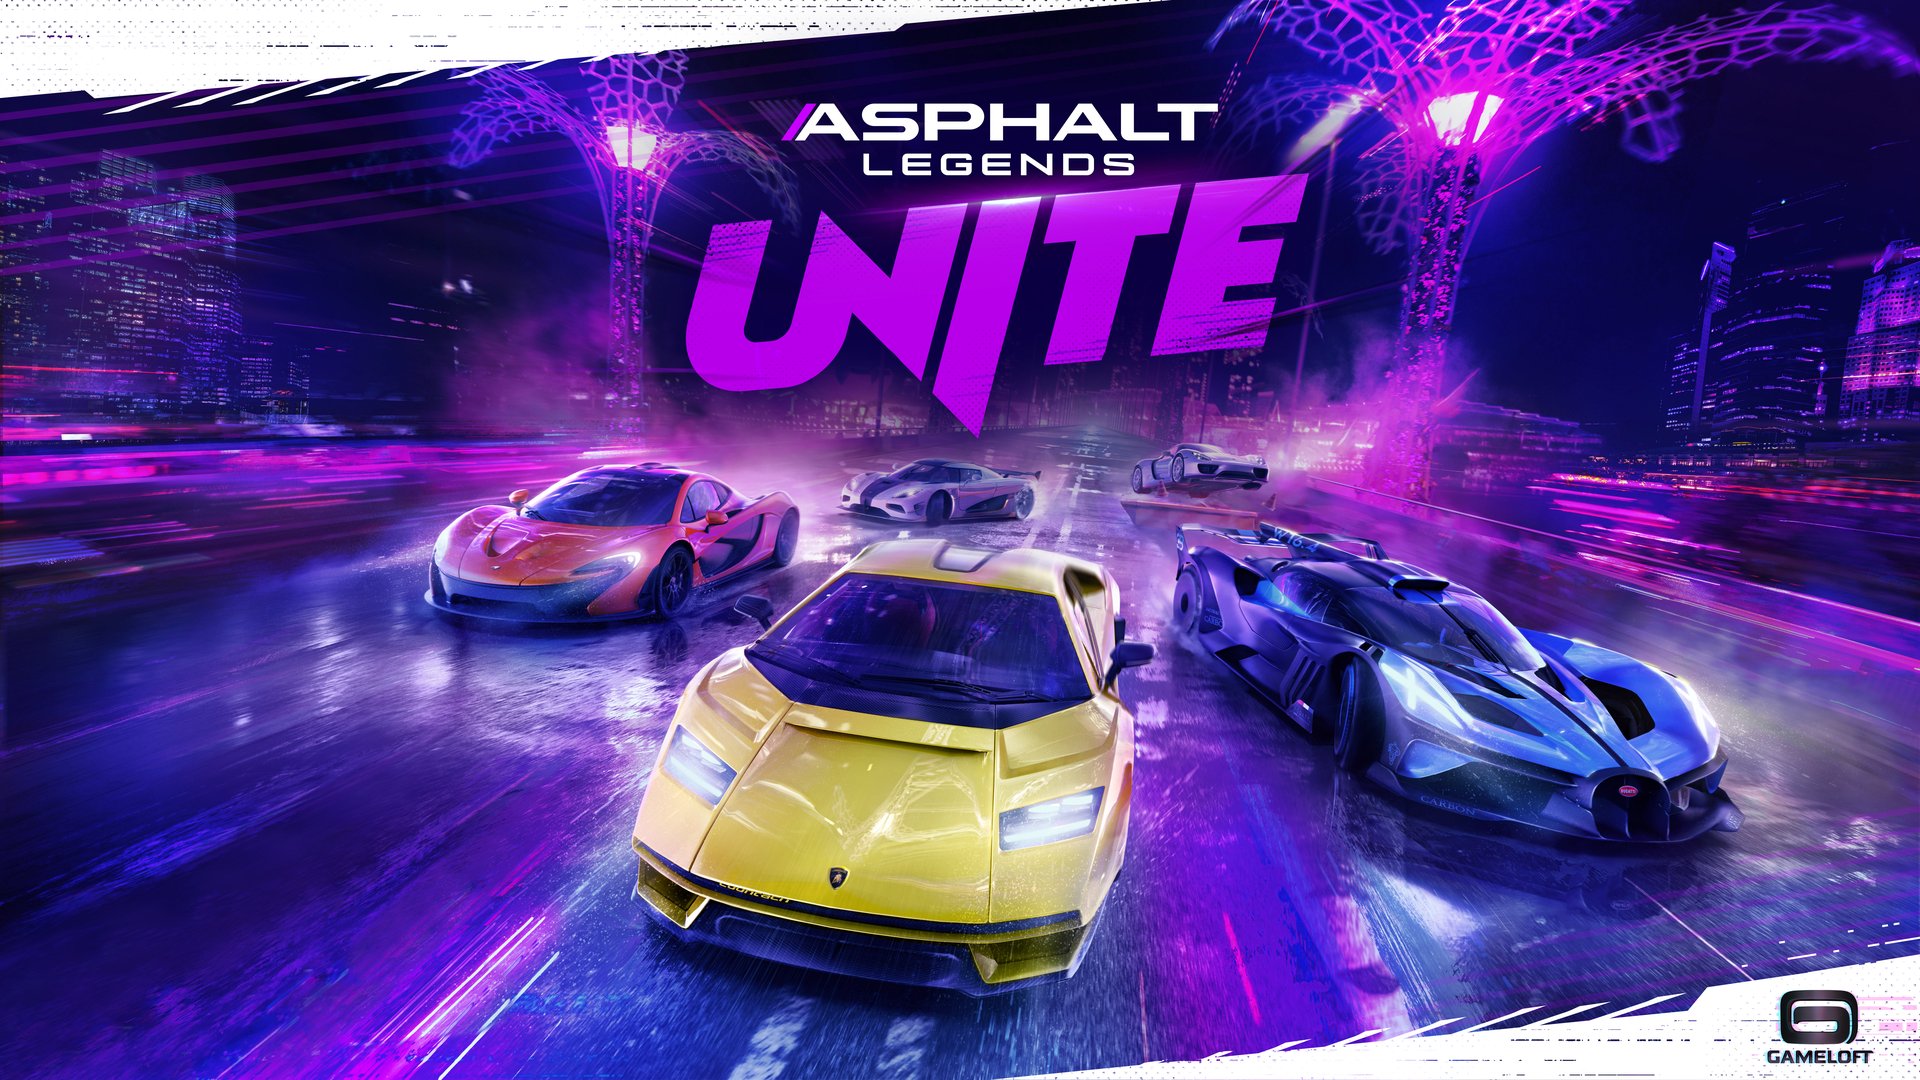 Asphalt revient avec Asphalt Legends Unite sur PC, consoles et mobiles